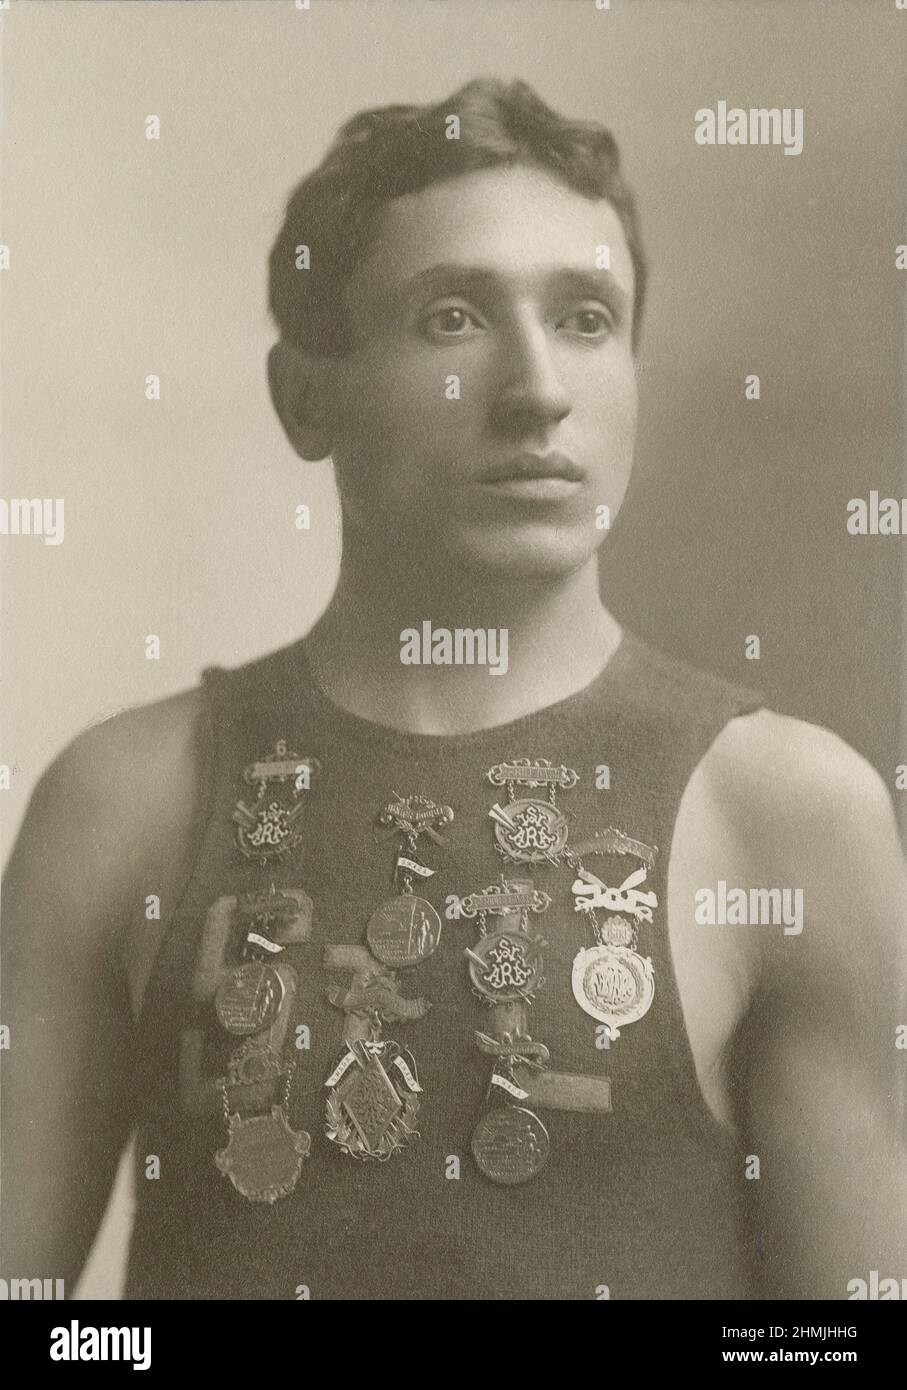 Antikes Foto von der Southwestern Amateur Rowing Association aus dem Jahr 1900 von einem jungen Mann, der ein St. Louis-Oberteil mit Medaillen auf seiner Brust trägt. QUELLE: ORIGINALFOTO DER KABINETTKARTE Stockfoto